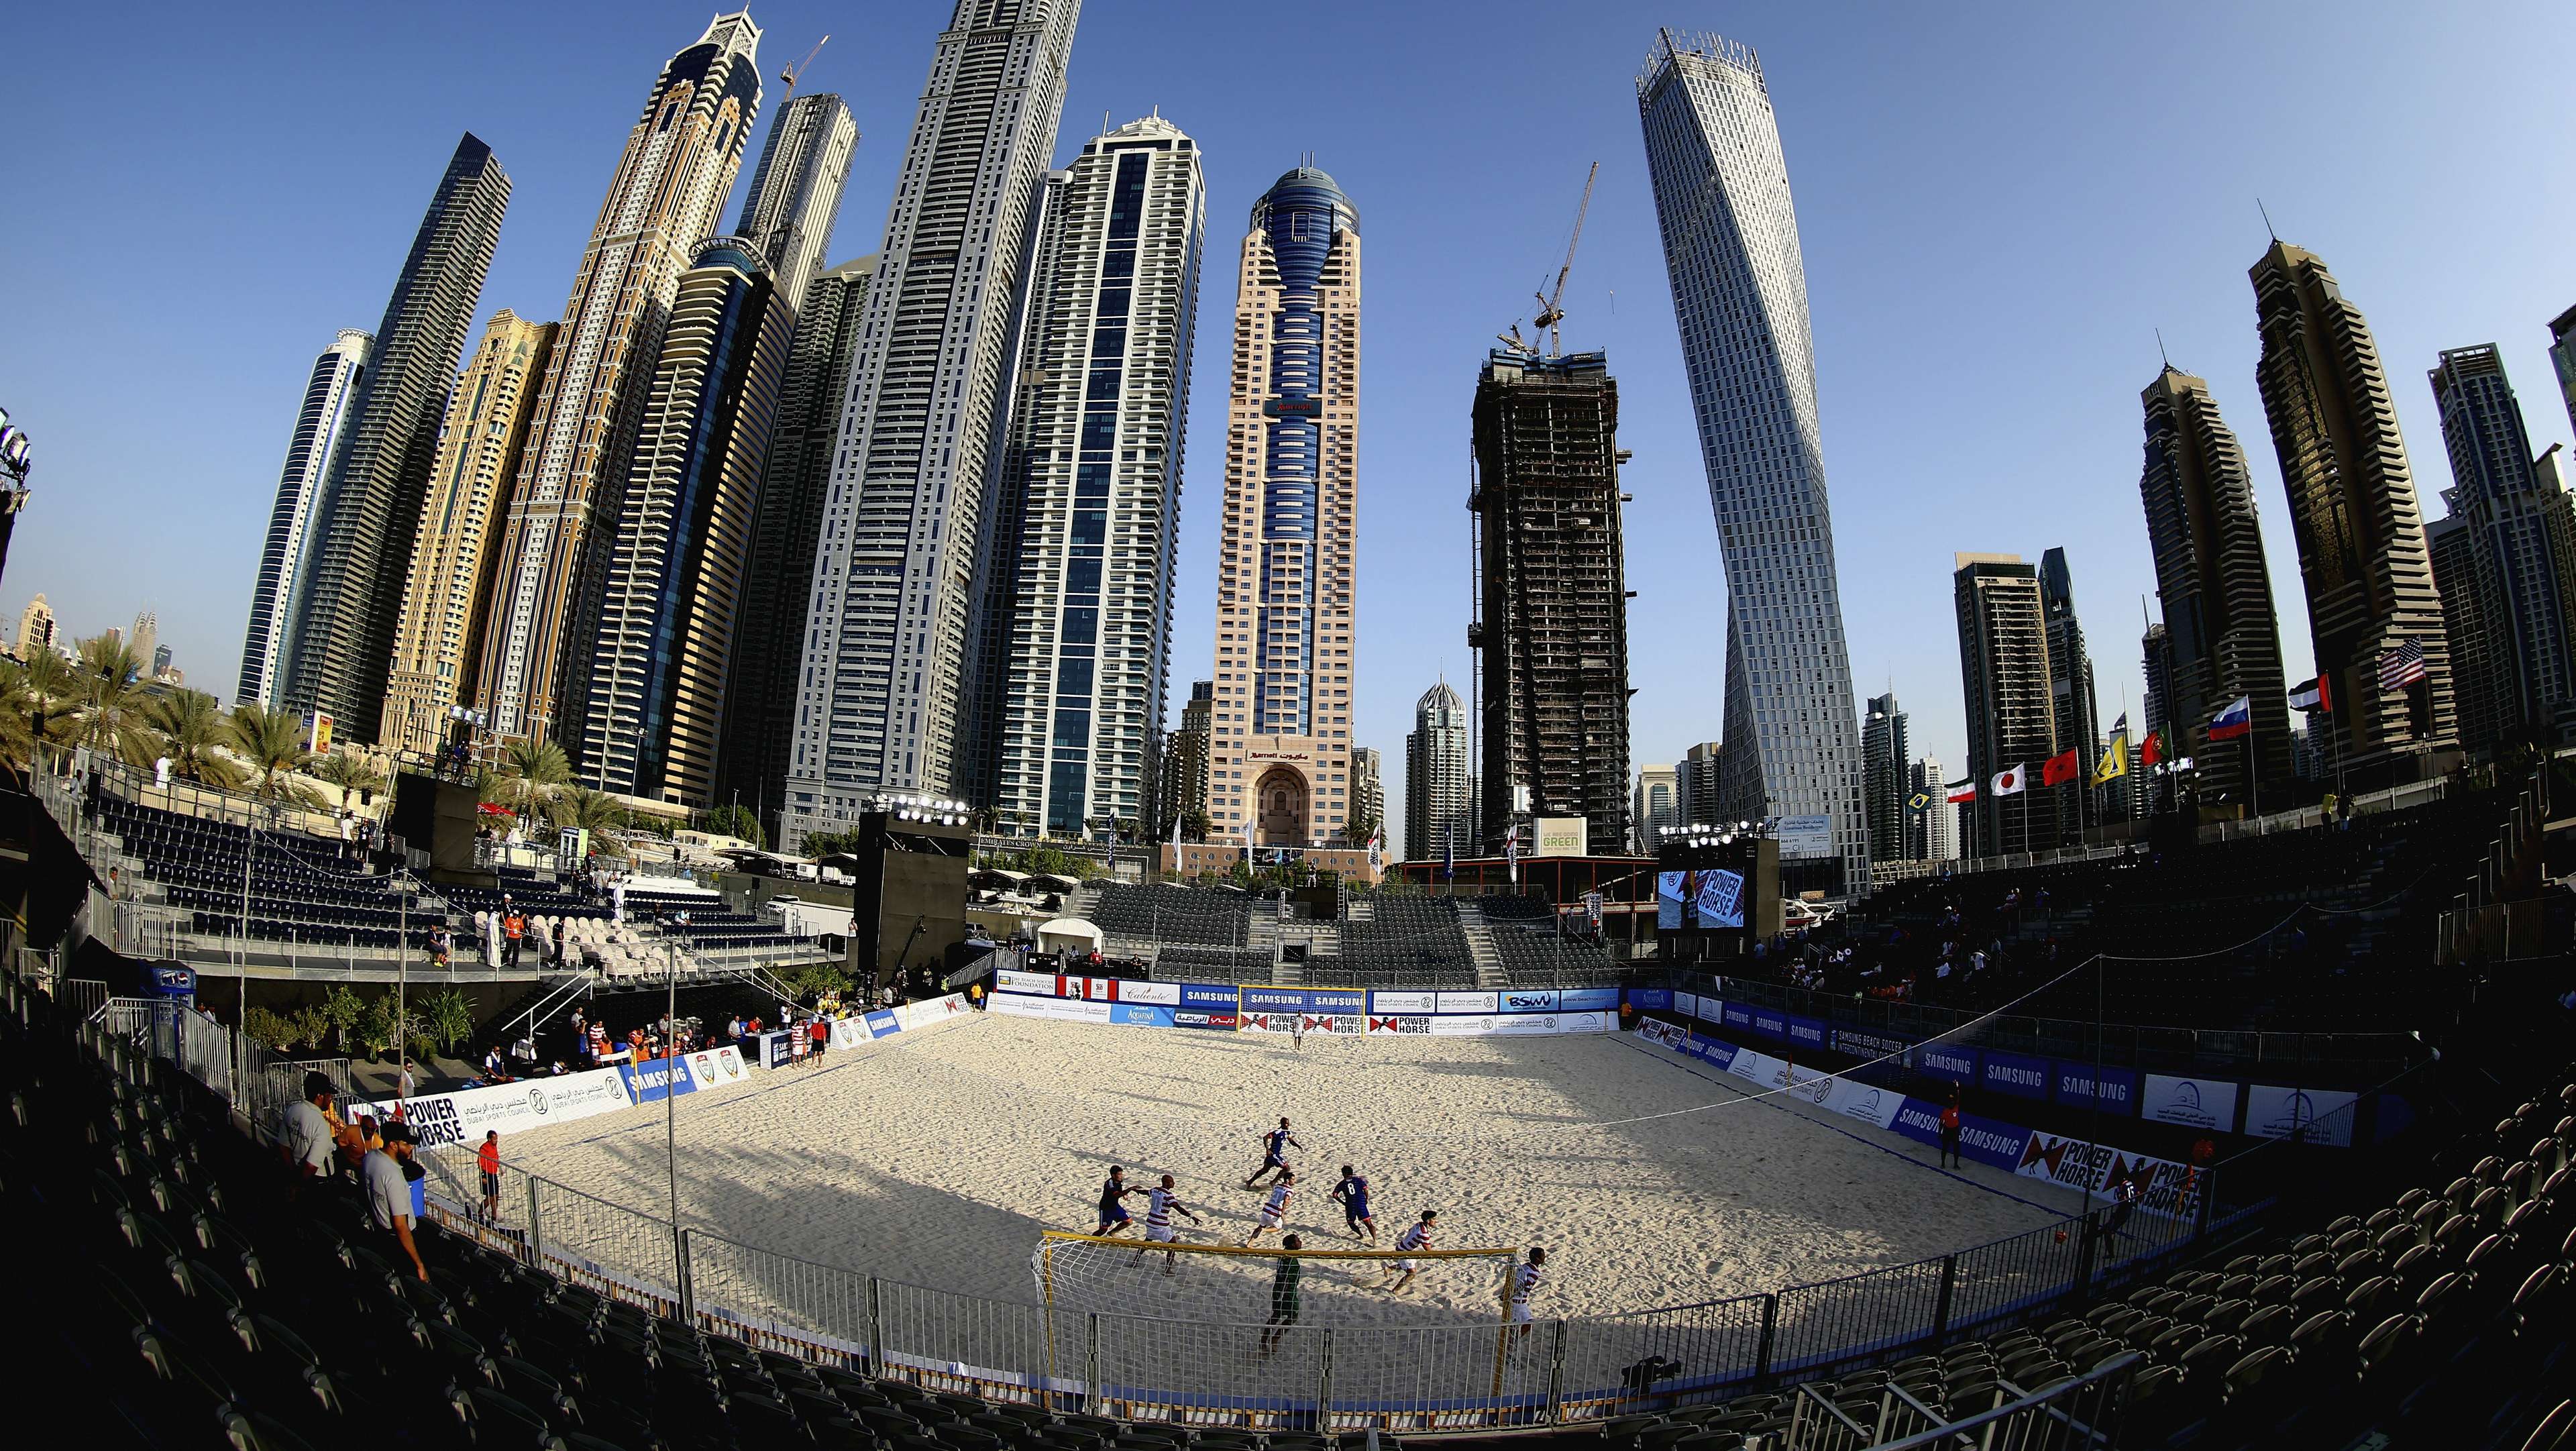 Huawei Intercontinental Beach Soccer Cup Dubai 2017